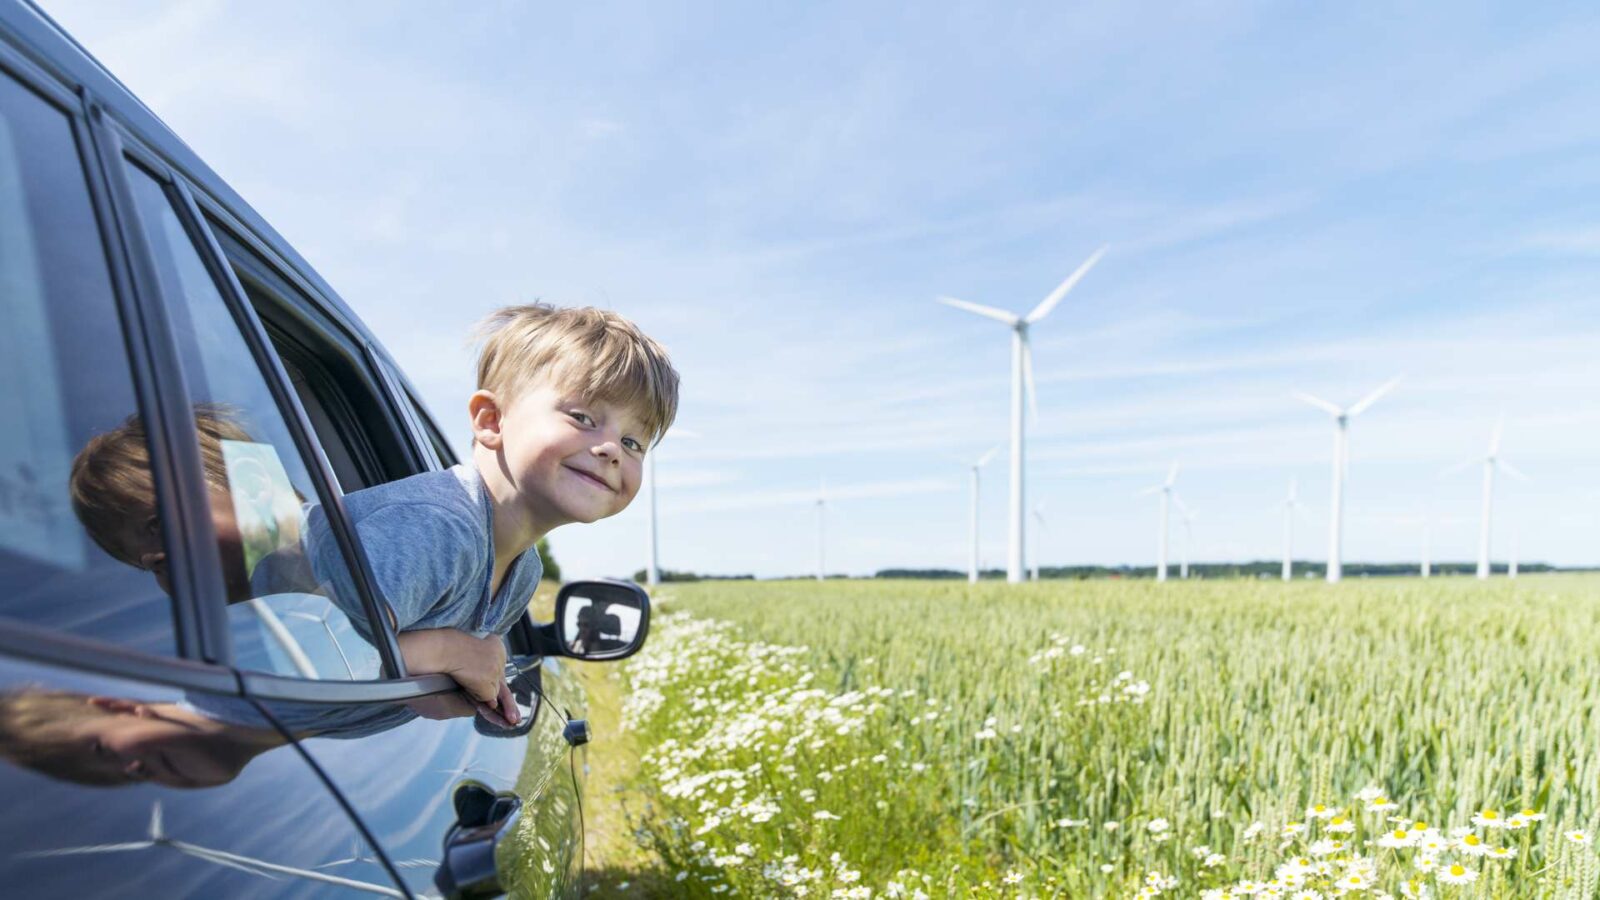 pojke tittar ut igenom ett bilfönster med gröna ängar och vindkraftverk i bakgrunden.